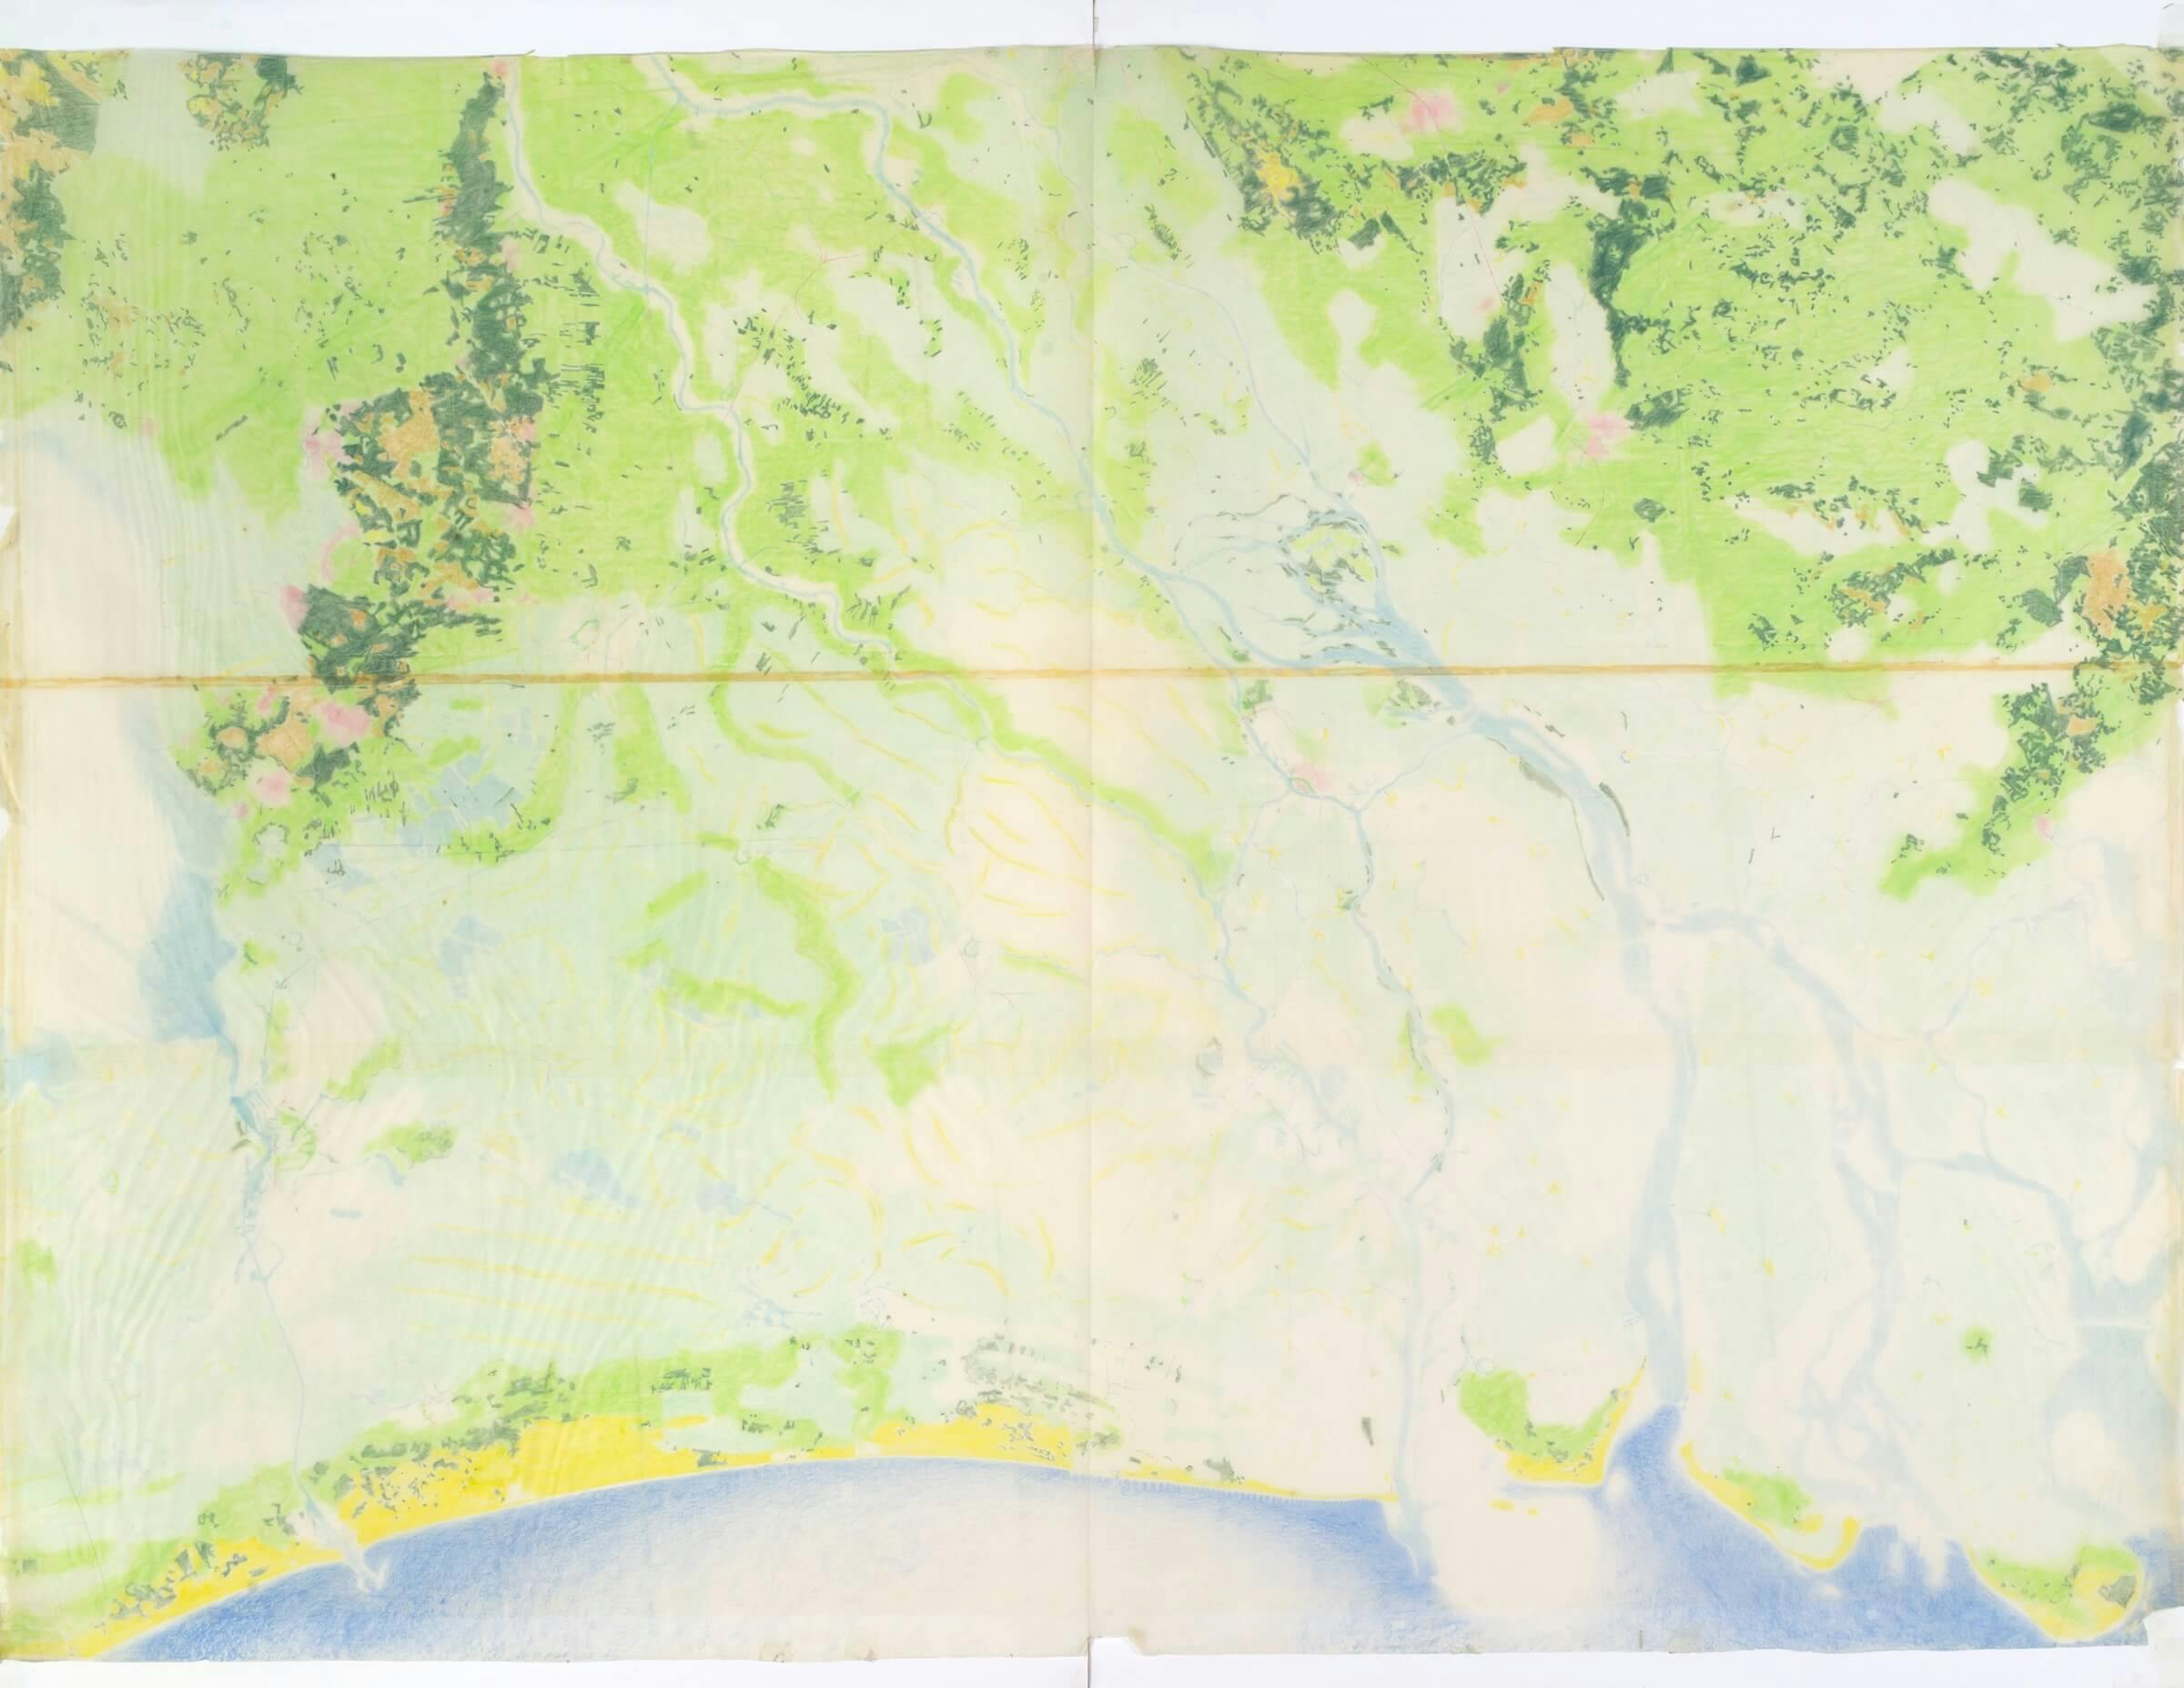 Pjotr Gonggrijp. Verschillende landschapstypen van de delta in Nederland, 1969. Schaal 1:100.000, situatie ca.1550 en later. Onderste calque toont landschap en bovenste calque toont nederzettingspatroon en veranderingen in landschap (duinvormin… 